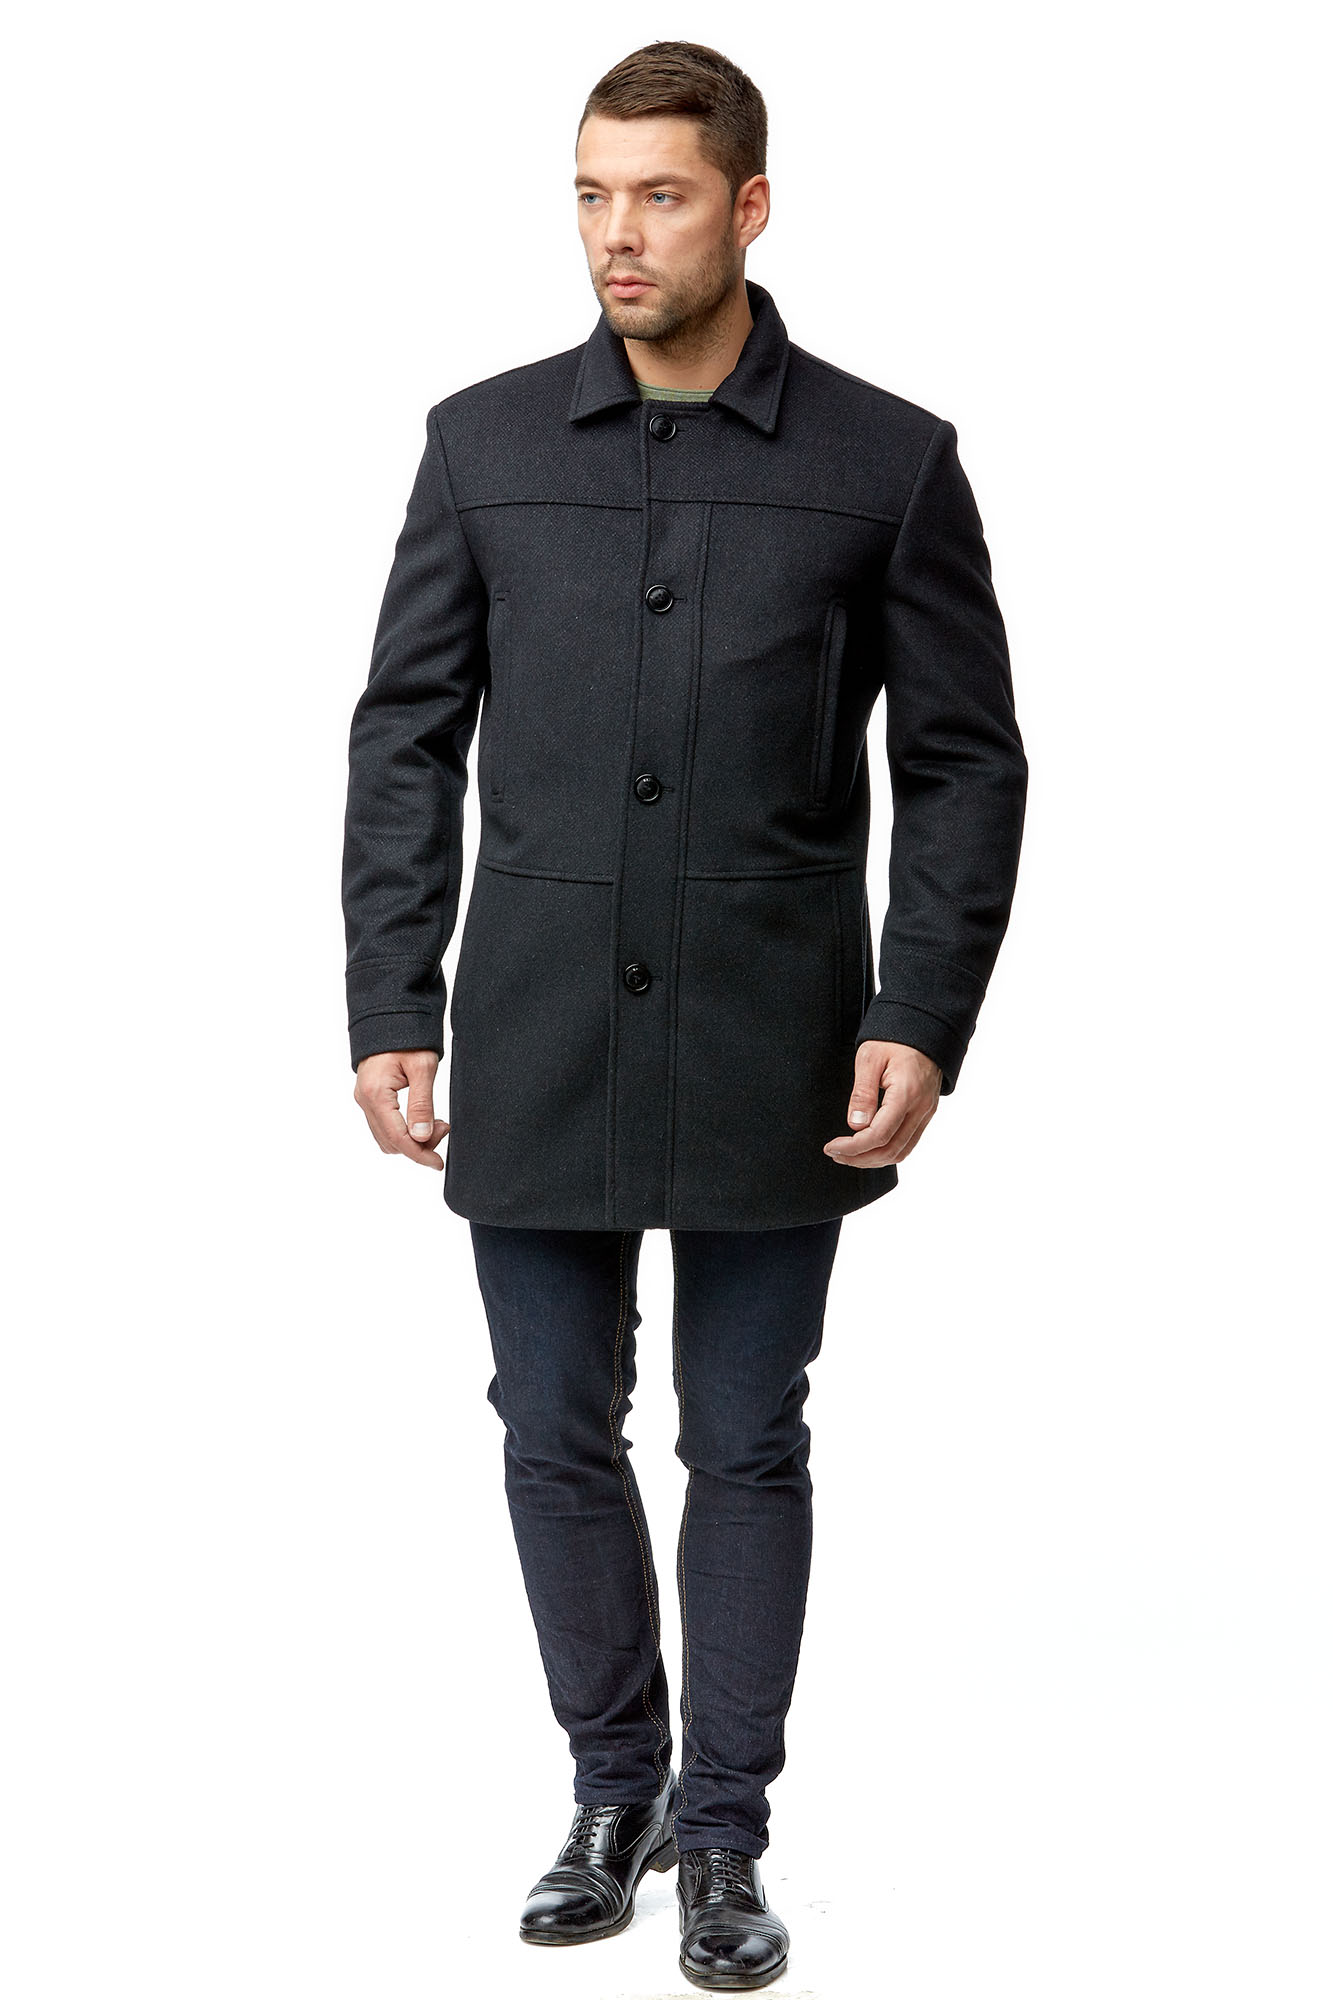 Мужское пальто из текстиля с воротником 8001793-3